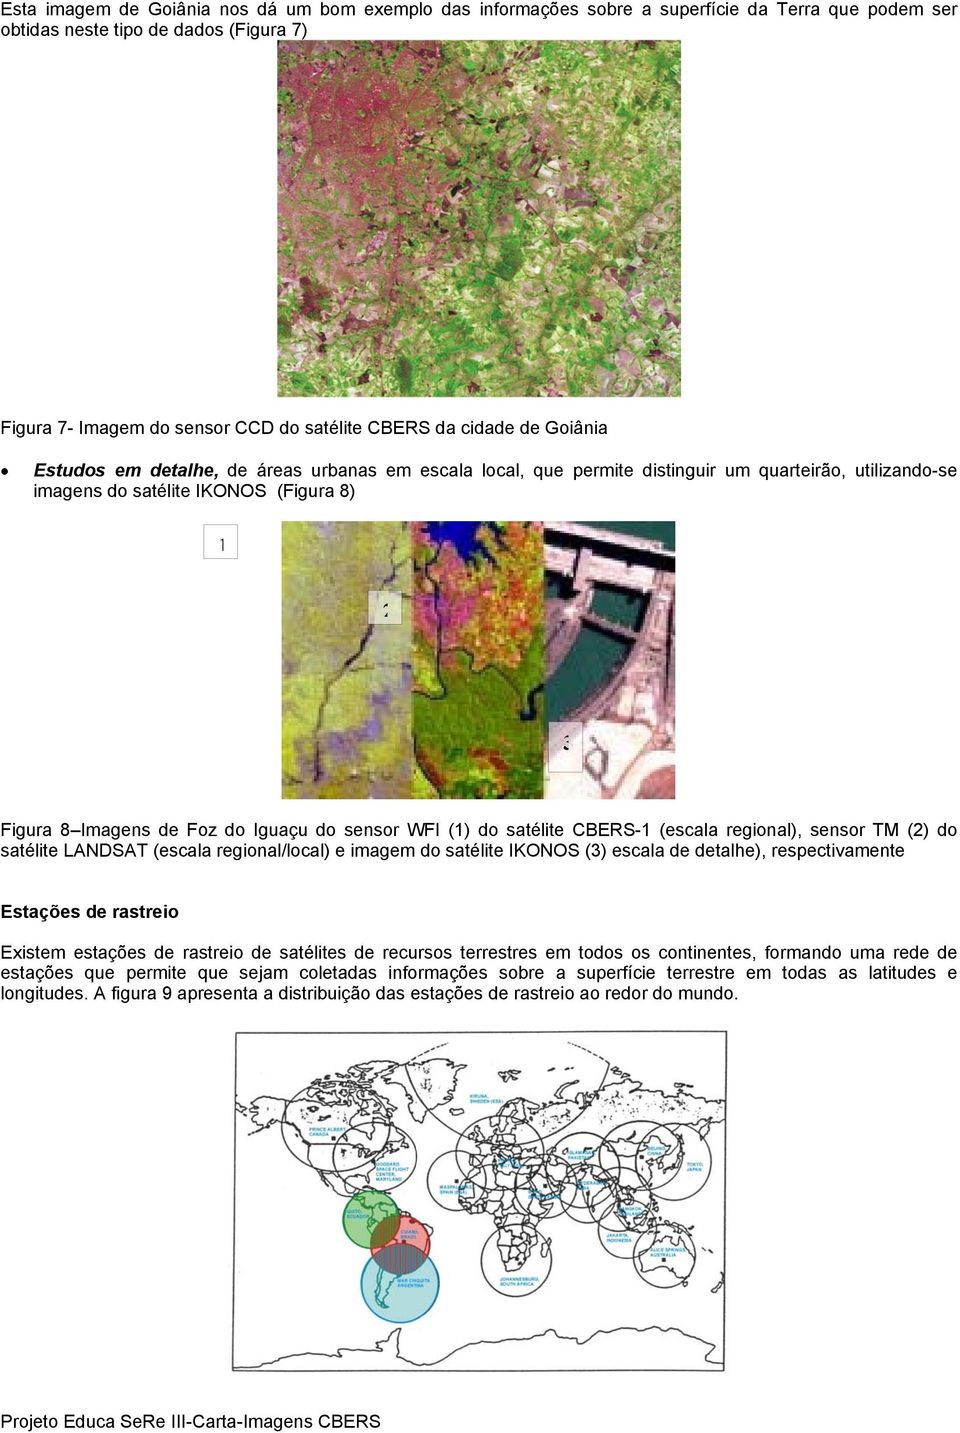 Iguaçu do sensor WFI (1) do satélite CBERS-1 (escala regional), sensor TM (2) do satélite LANDSAT (escala regional/local) e imagem do satélite IKONOS (3) escala de detalhe), respectivamente Estações